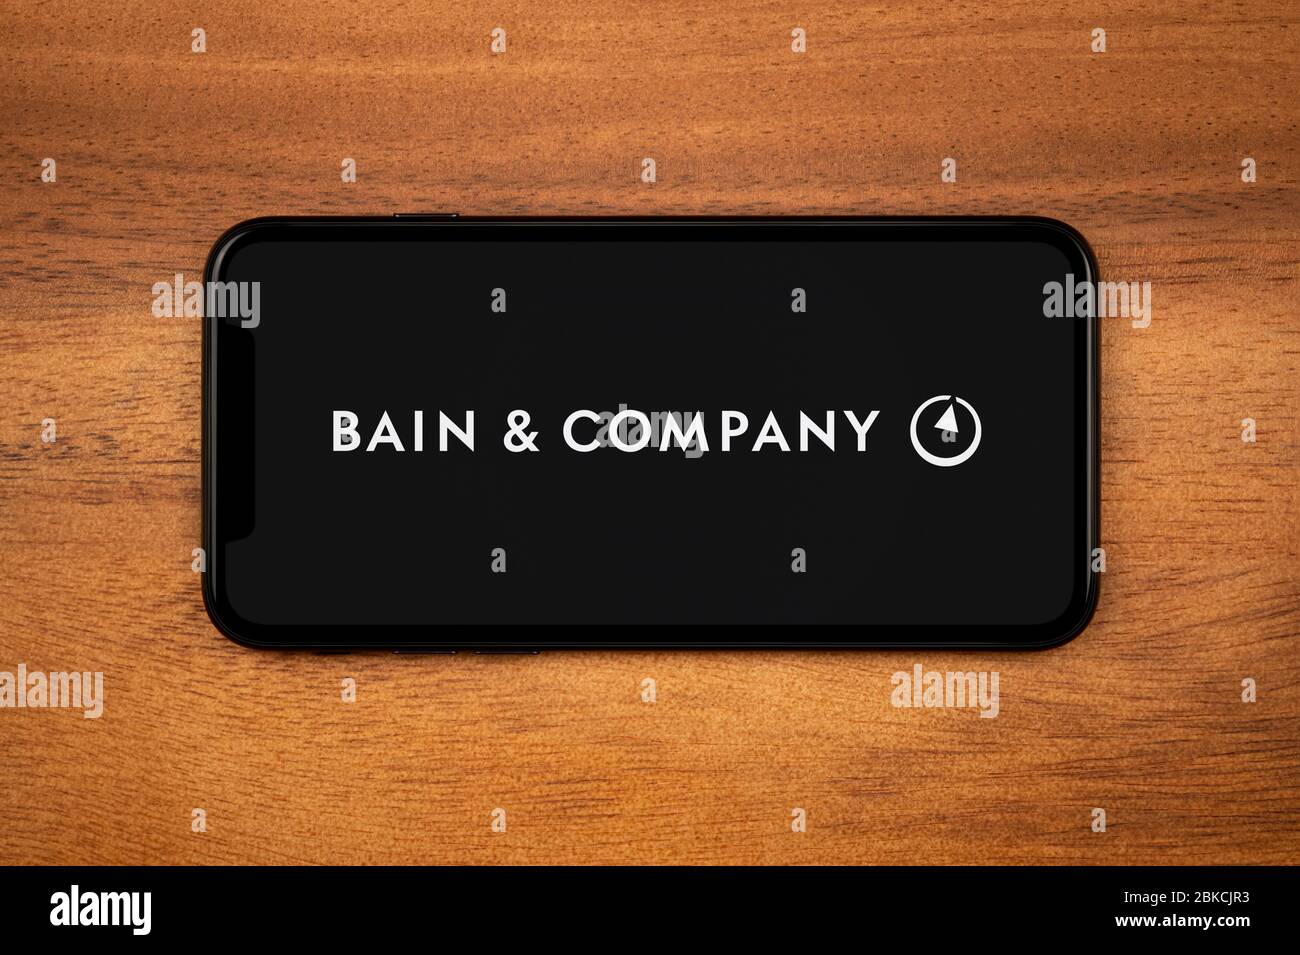 Un smartphone affichant le logo bains & Company repose sur une table en bois ordinaire (usage éditorial uniquement). Banque D'Images